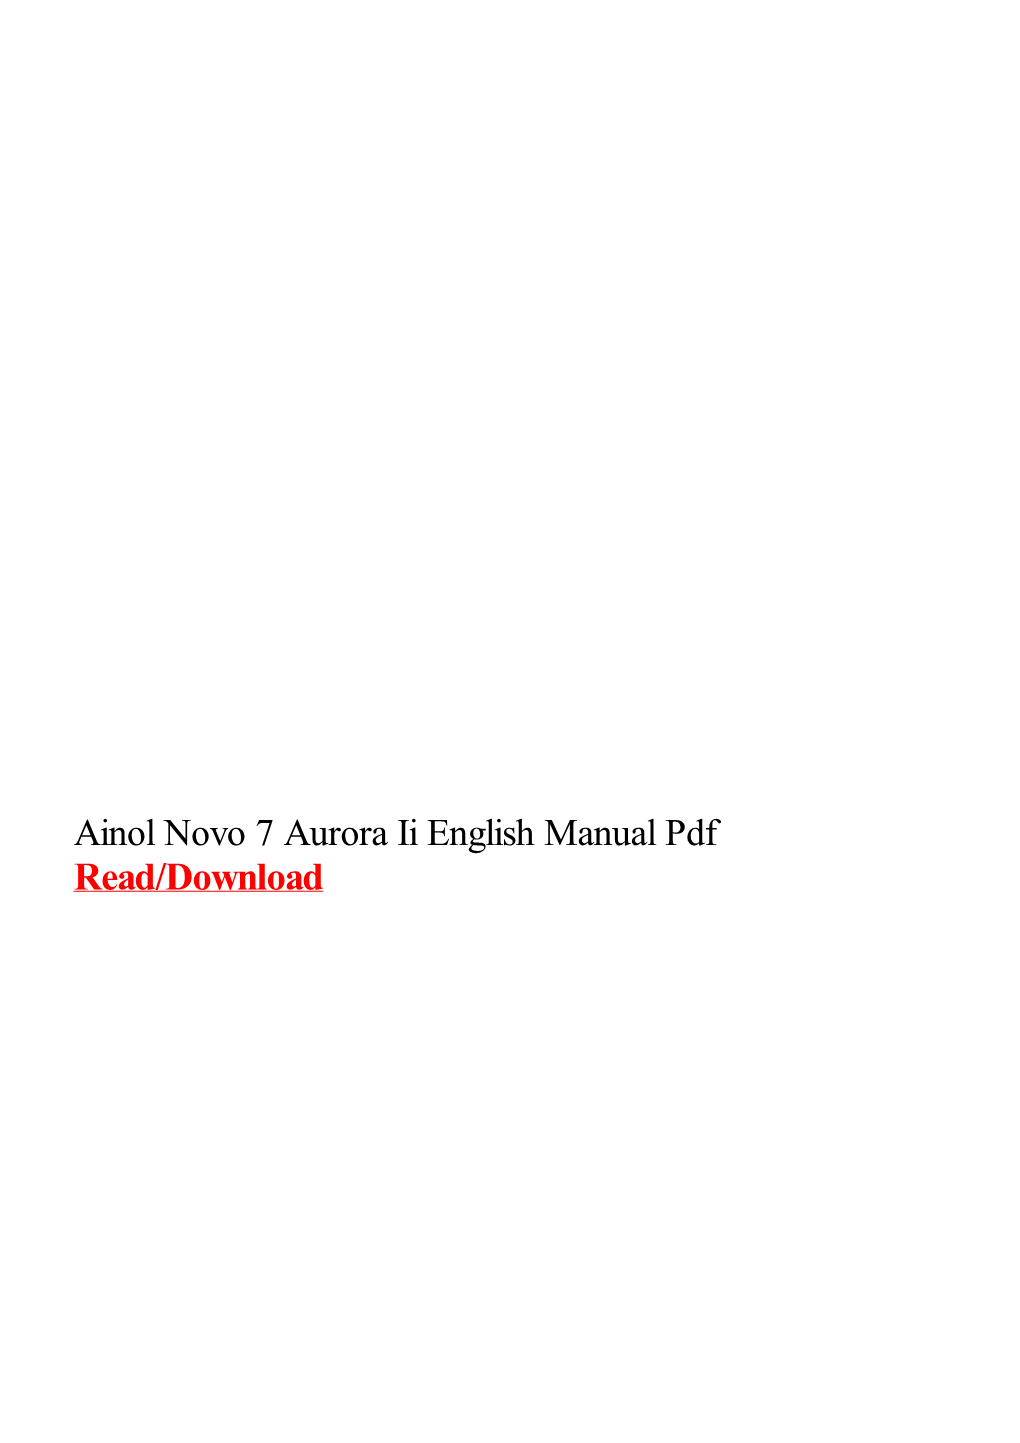 Ainol Novo 7 Aurora Ii English Manual Pdf.Pdf